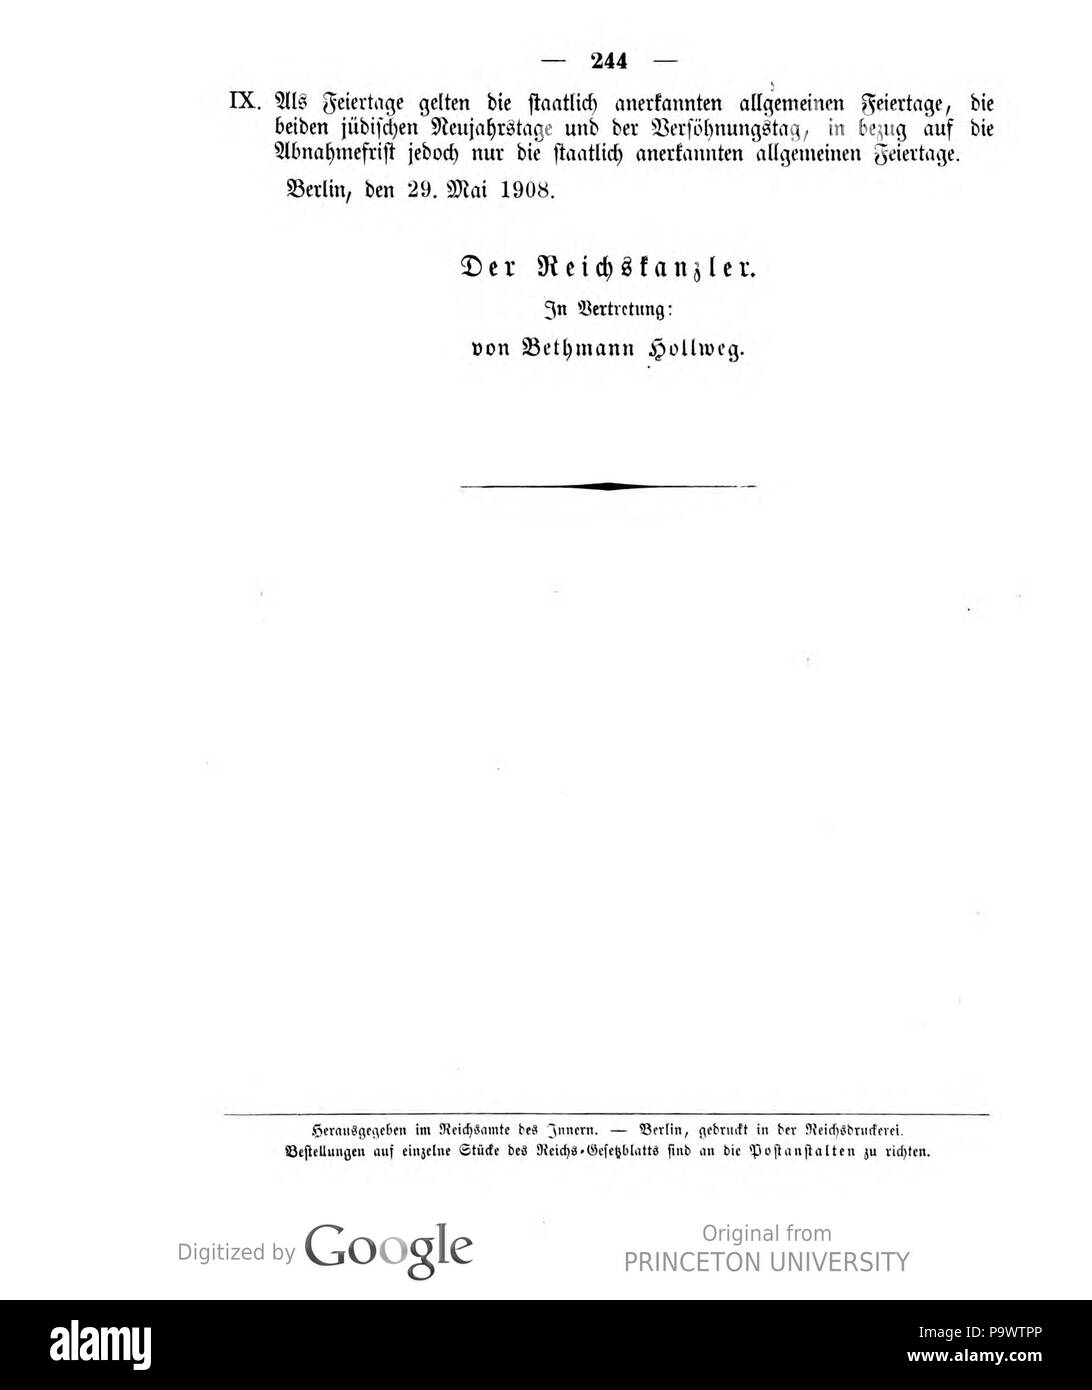 427 Deutsches Reichsgesetzblatt 1908 028 244 Stock Photo